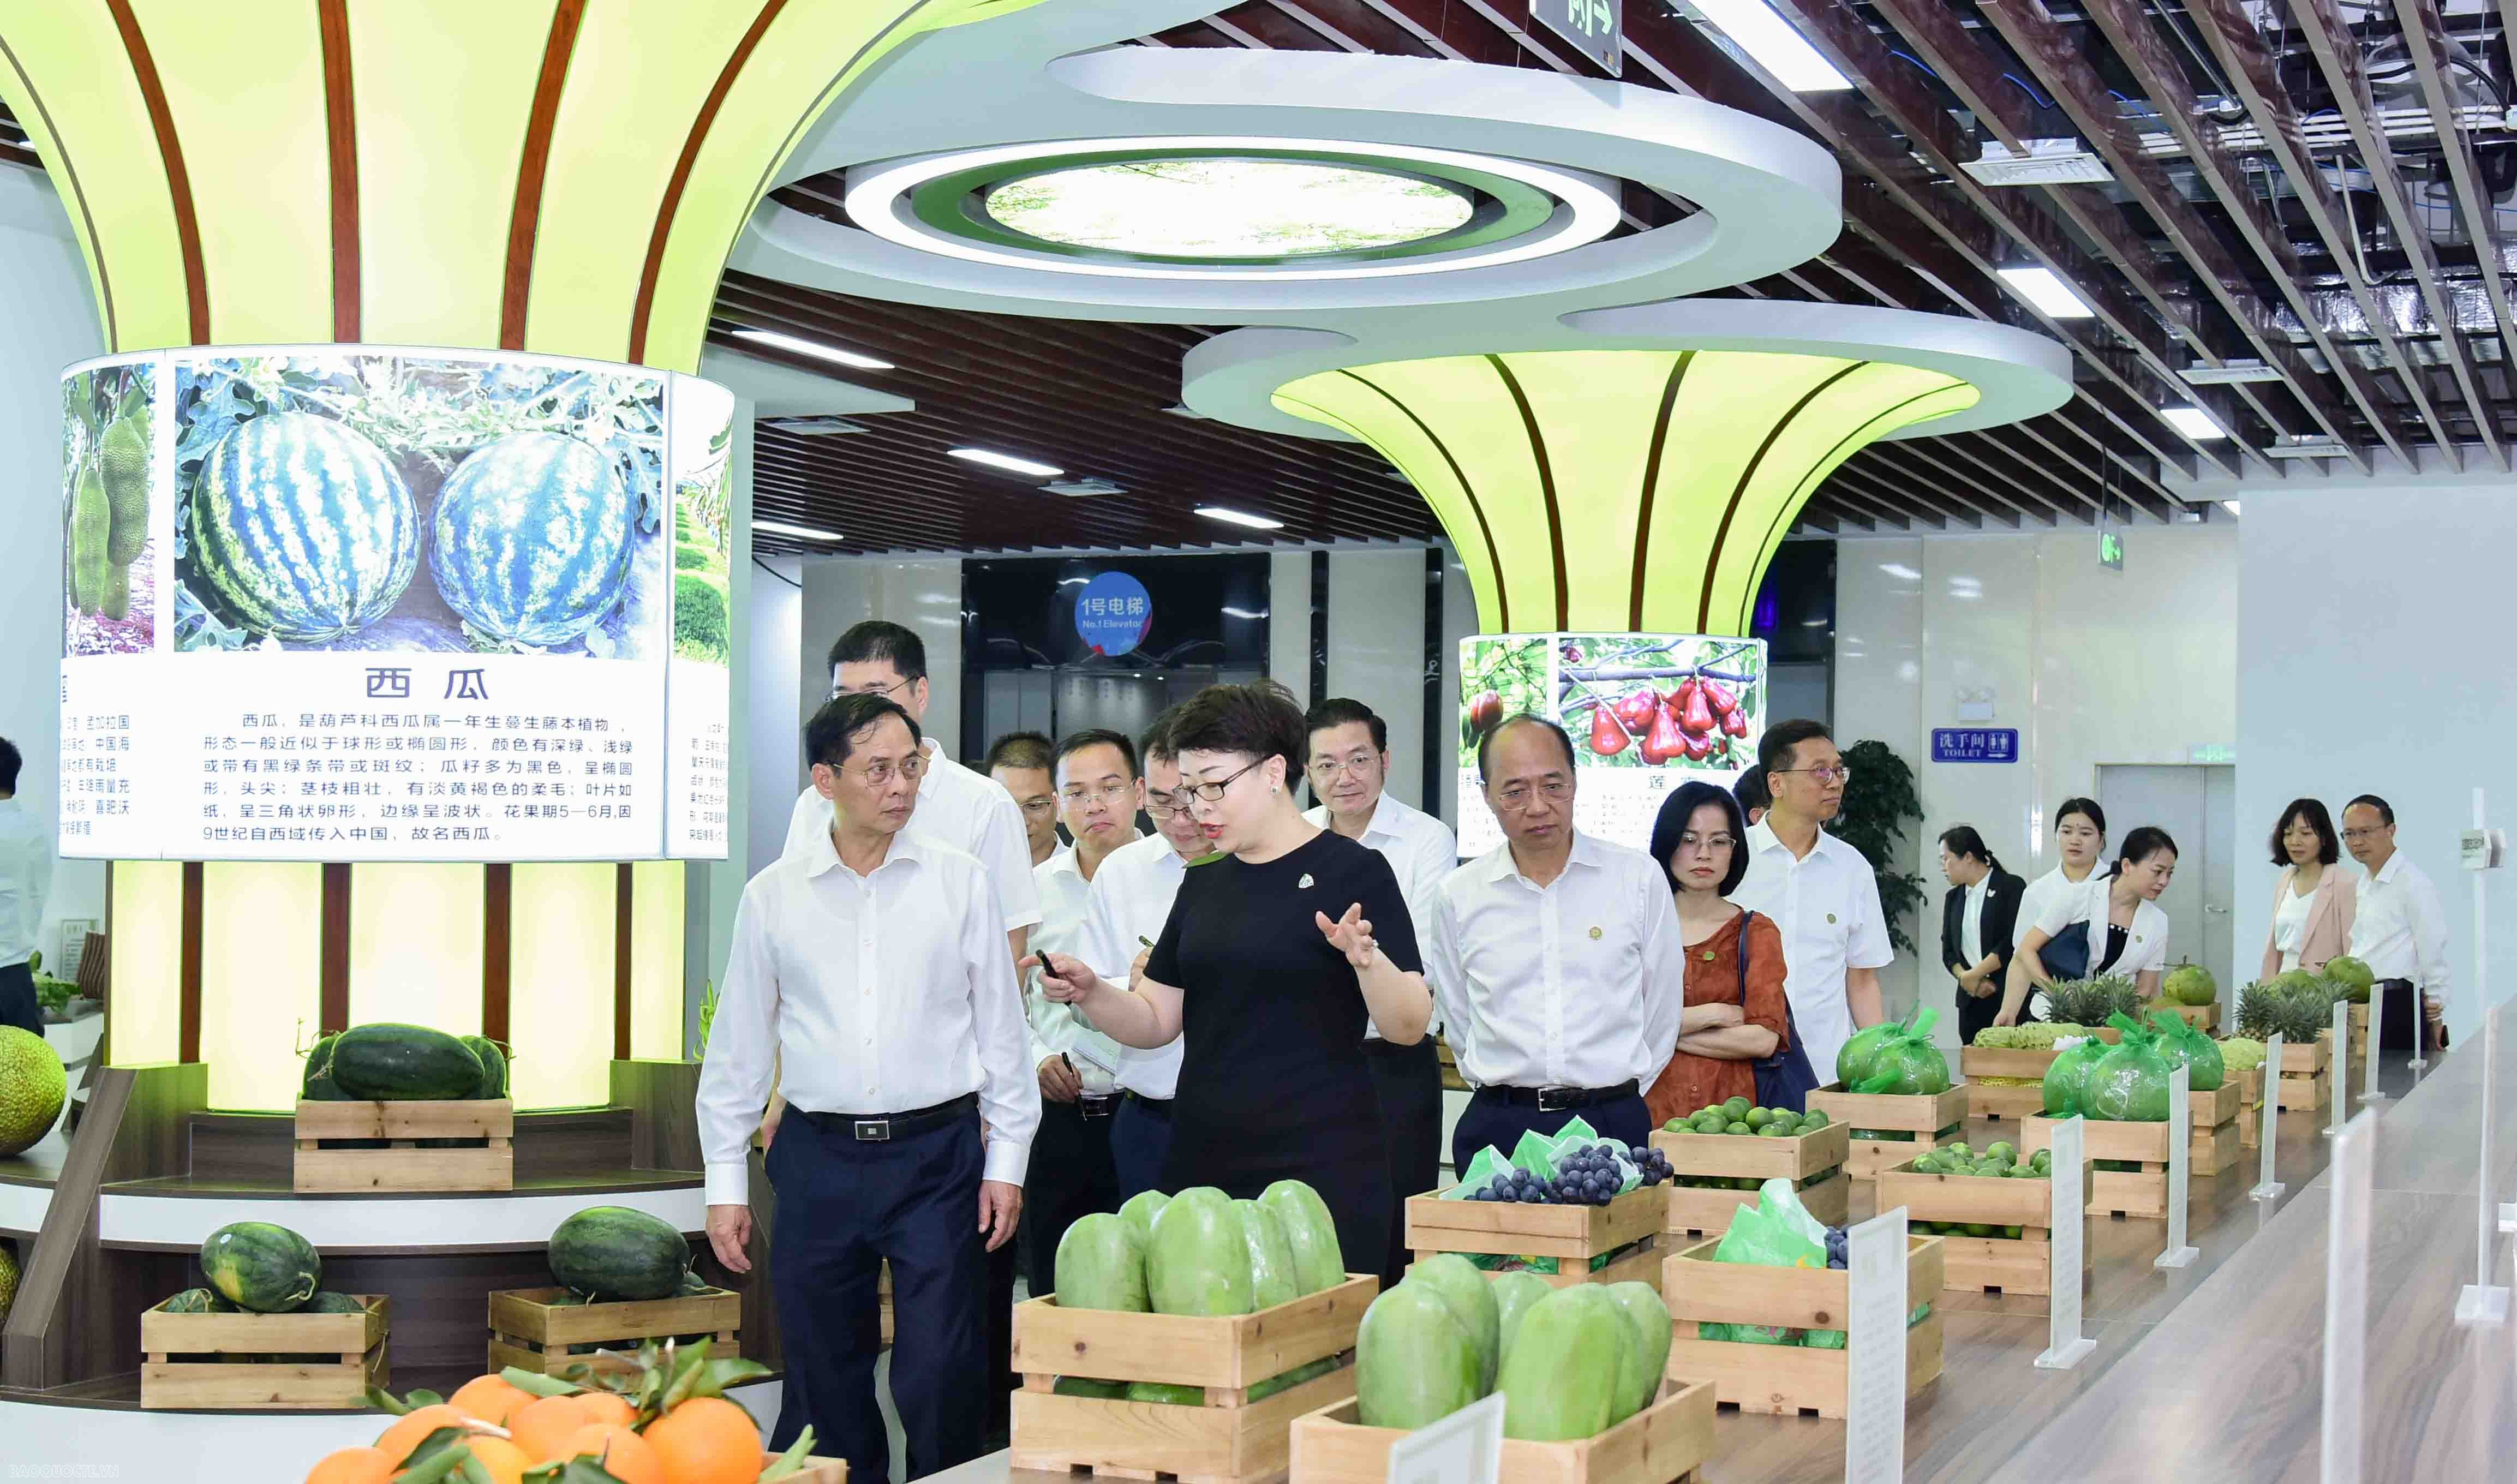 Ngay sau đó, Bộ trưởng Bùi Thanh Sơn đã thăm Trung tâm Thương mại hoa quả Trung Quốc – ASEAN.